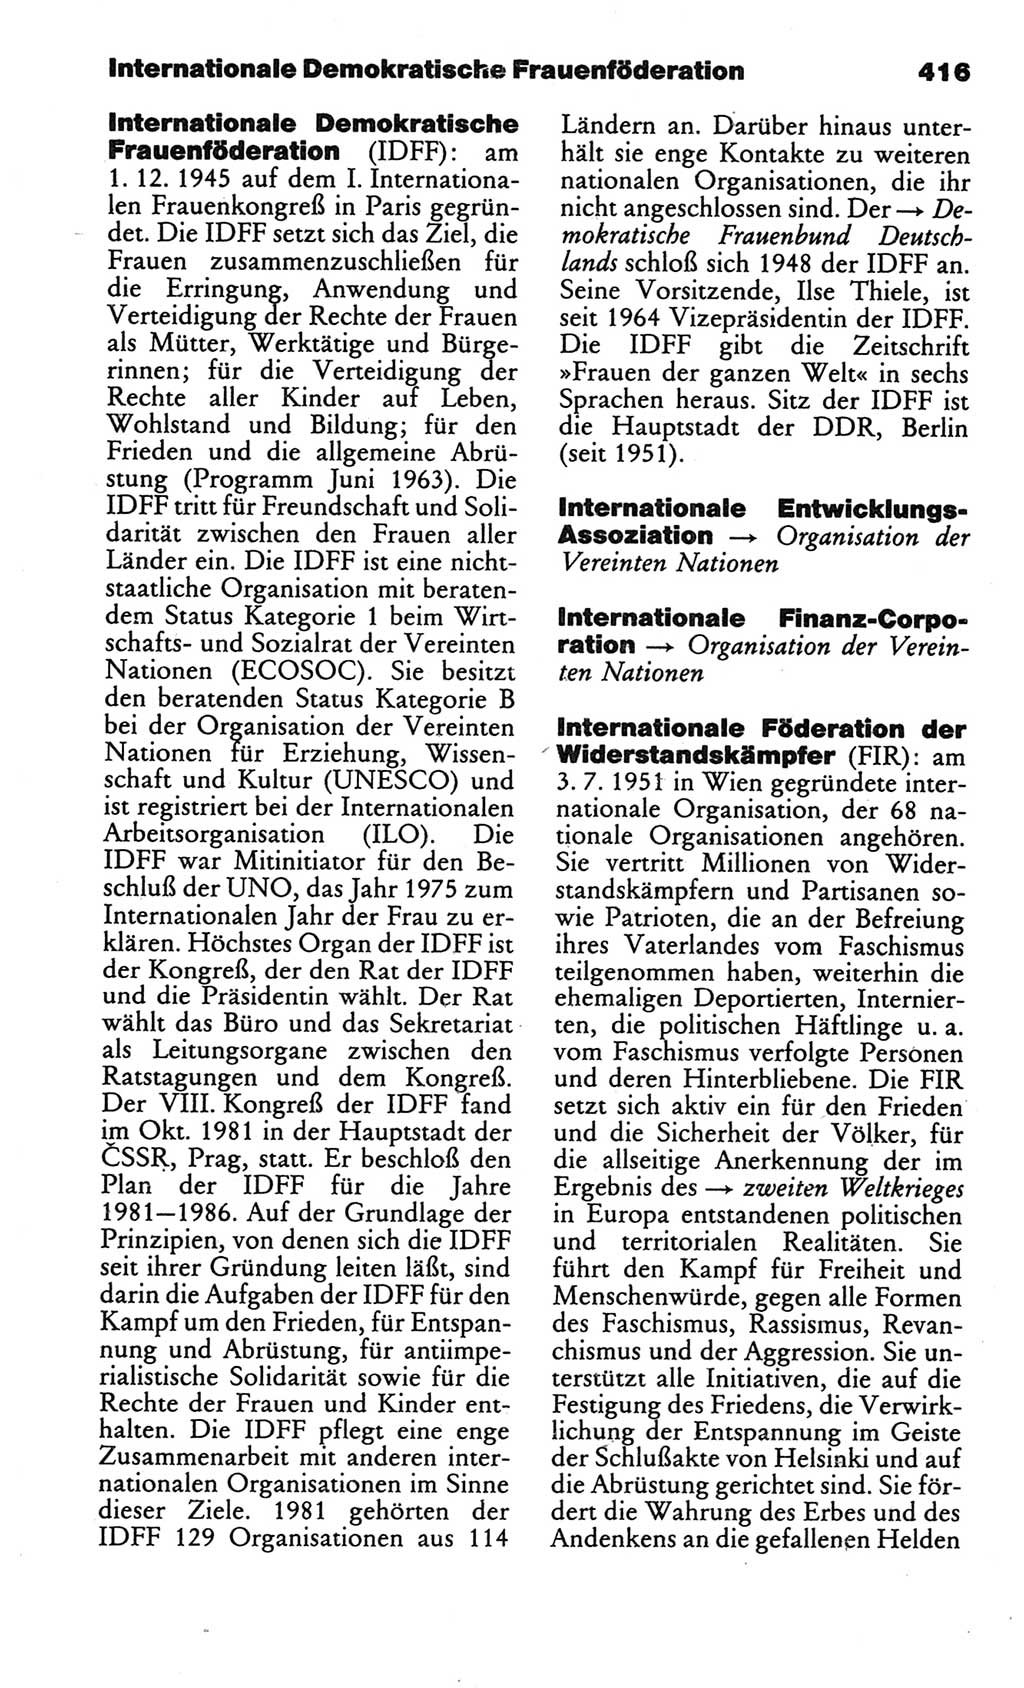 Kleines politisches Wörterbuch [Deutsche Demokratische Republik (DDR)] 1986, Seite 416 (Kl. pol. Wb. DDR 1986, S. 416)